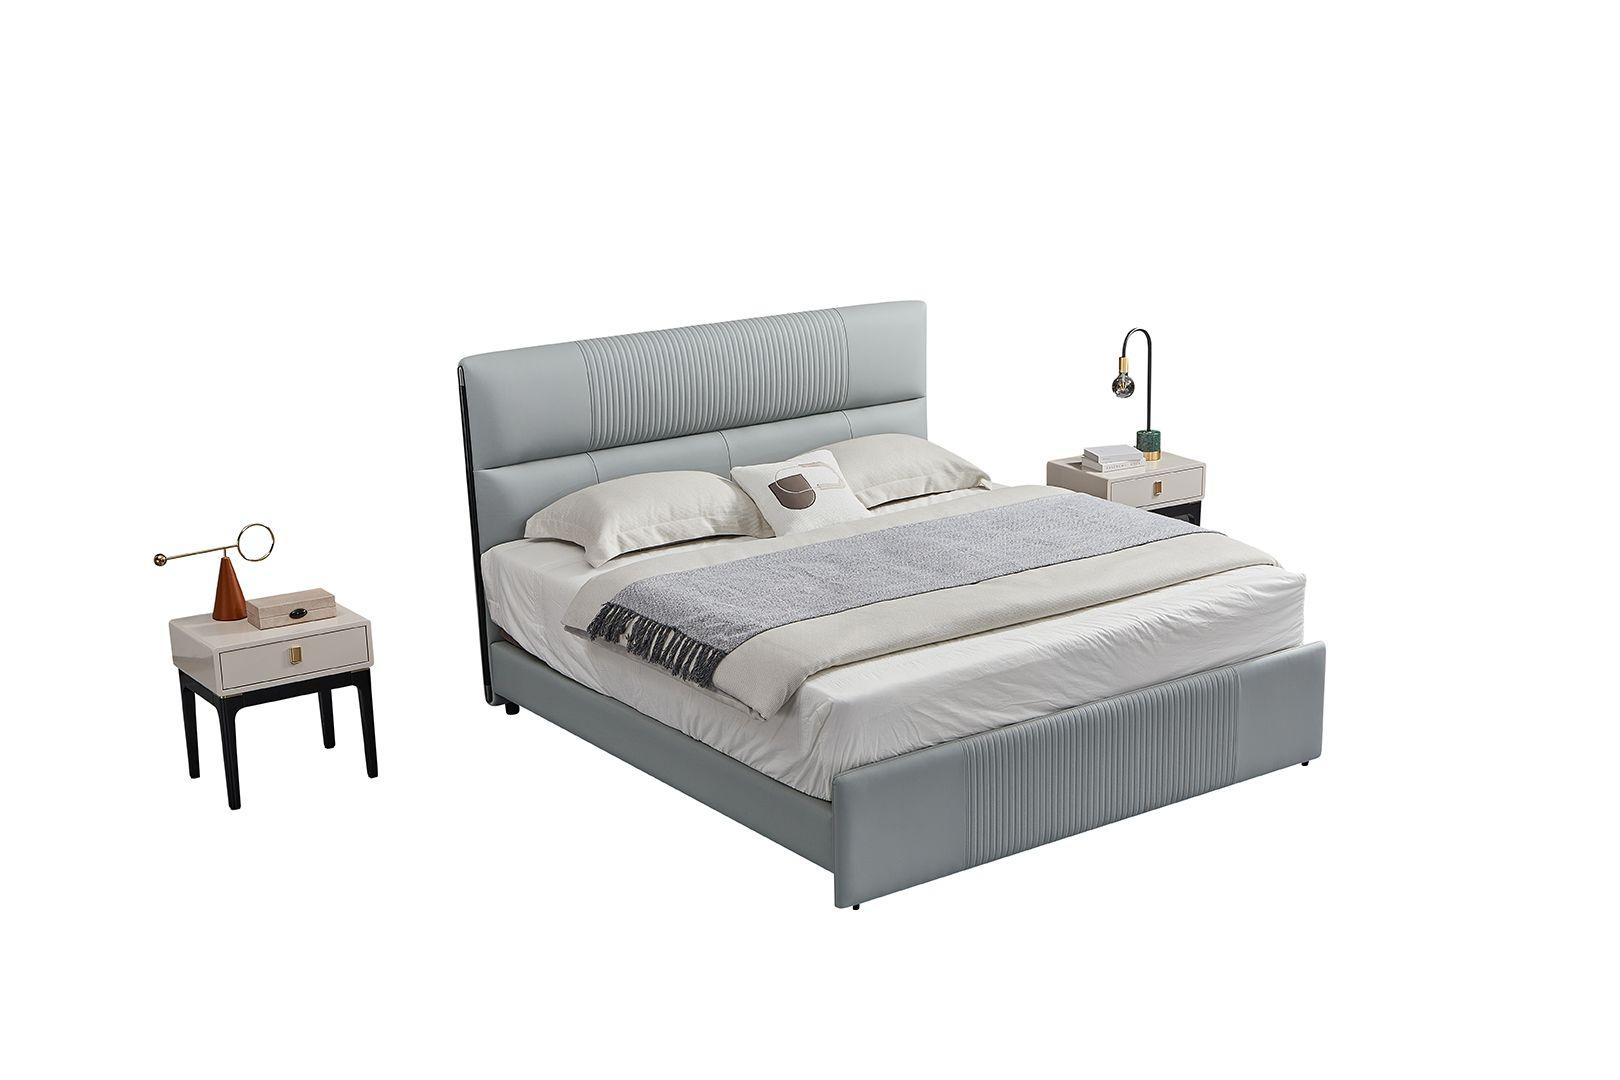 

    
American Eagle Furniture B-Y2002-CK Platform Bedroom Set Gray B-Y2002-CK-3PC
